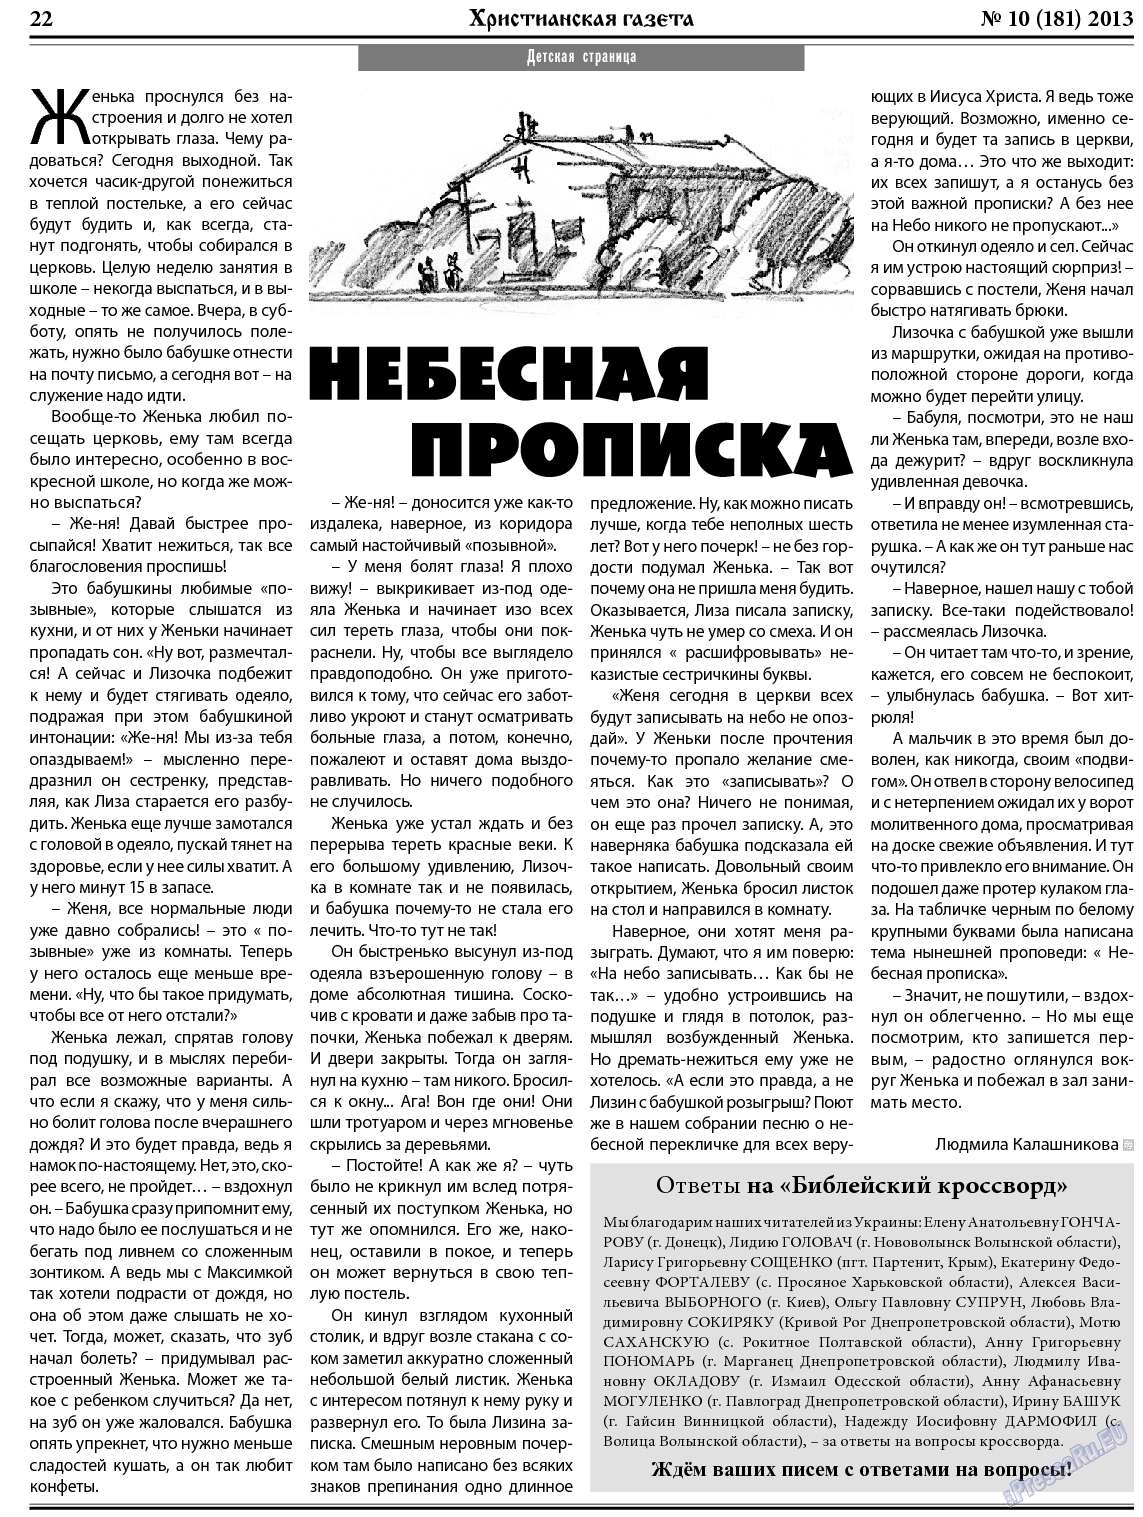 Христианская газета, газета. 2013 №10 стр.30